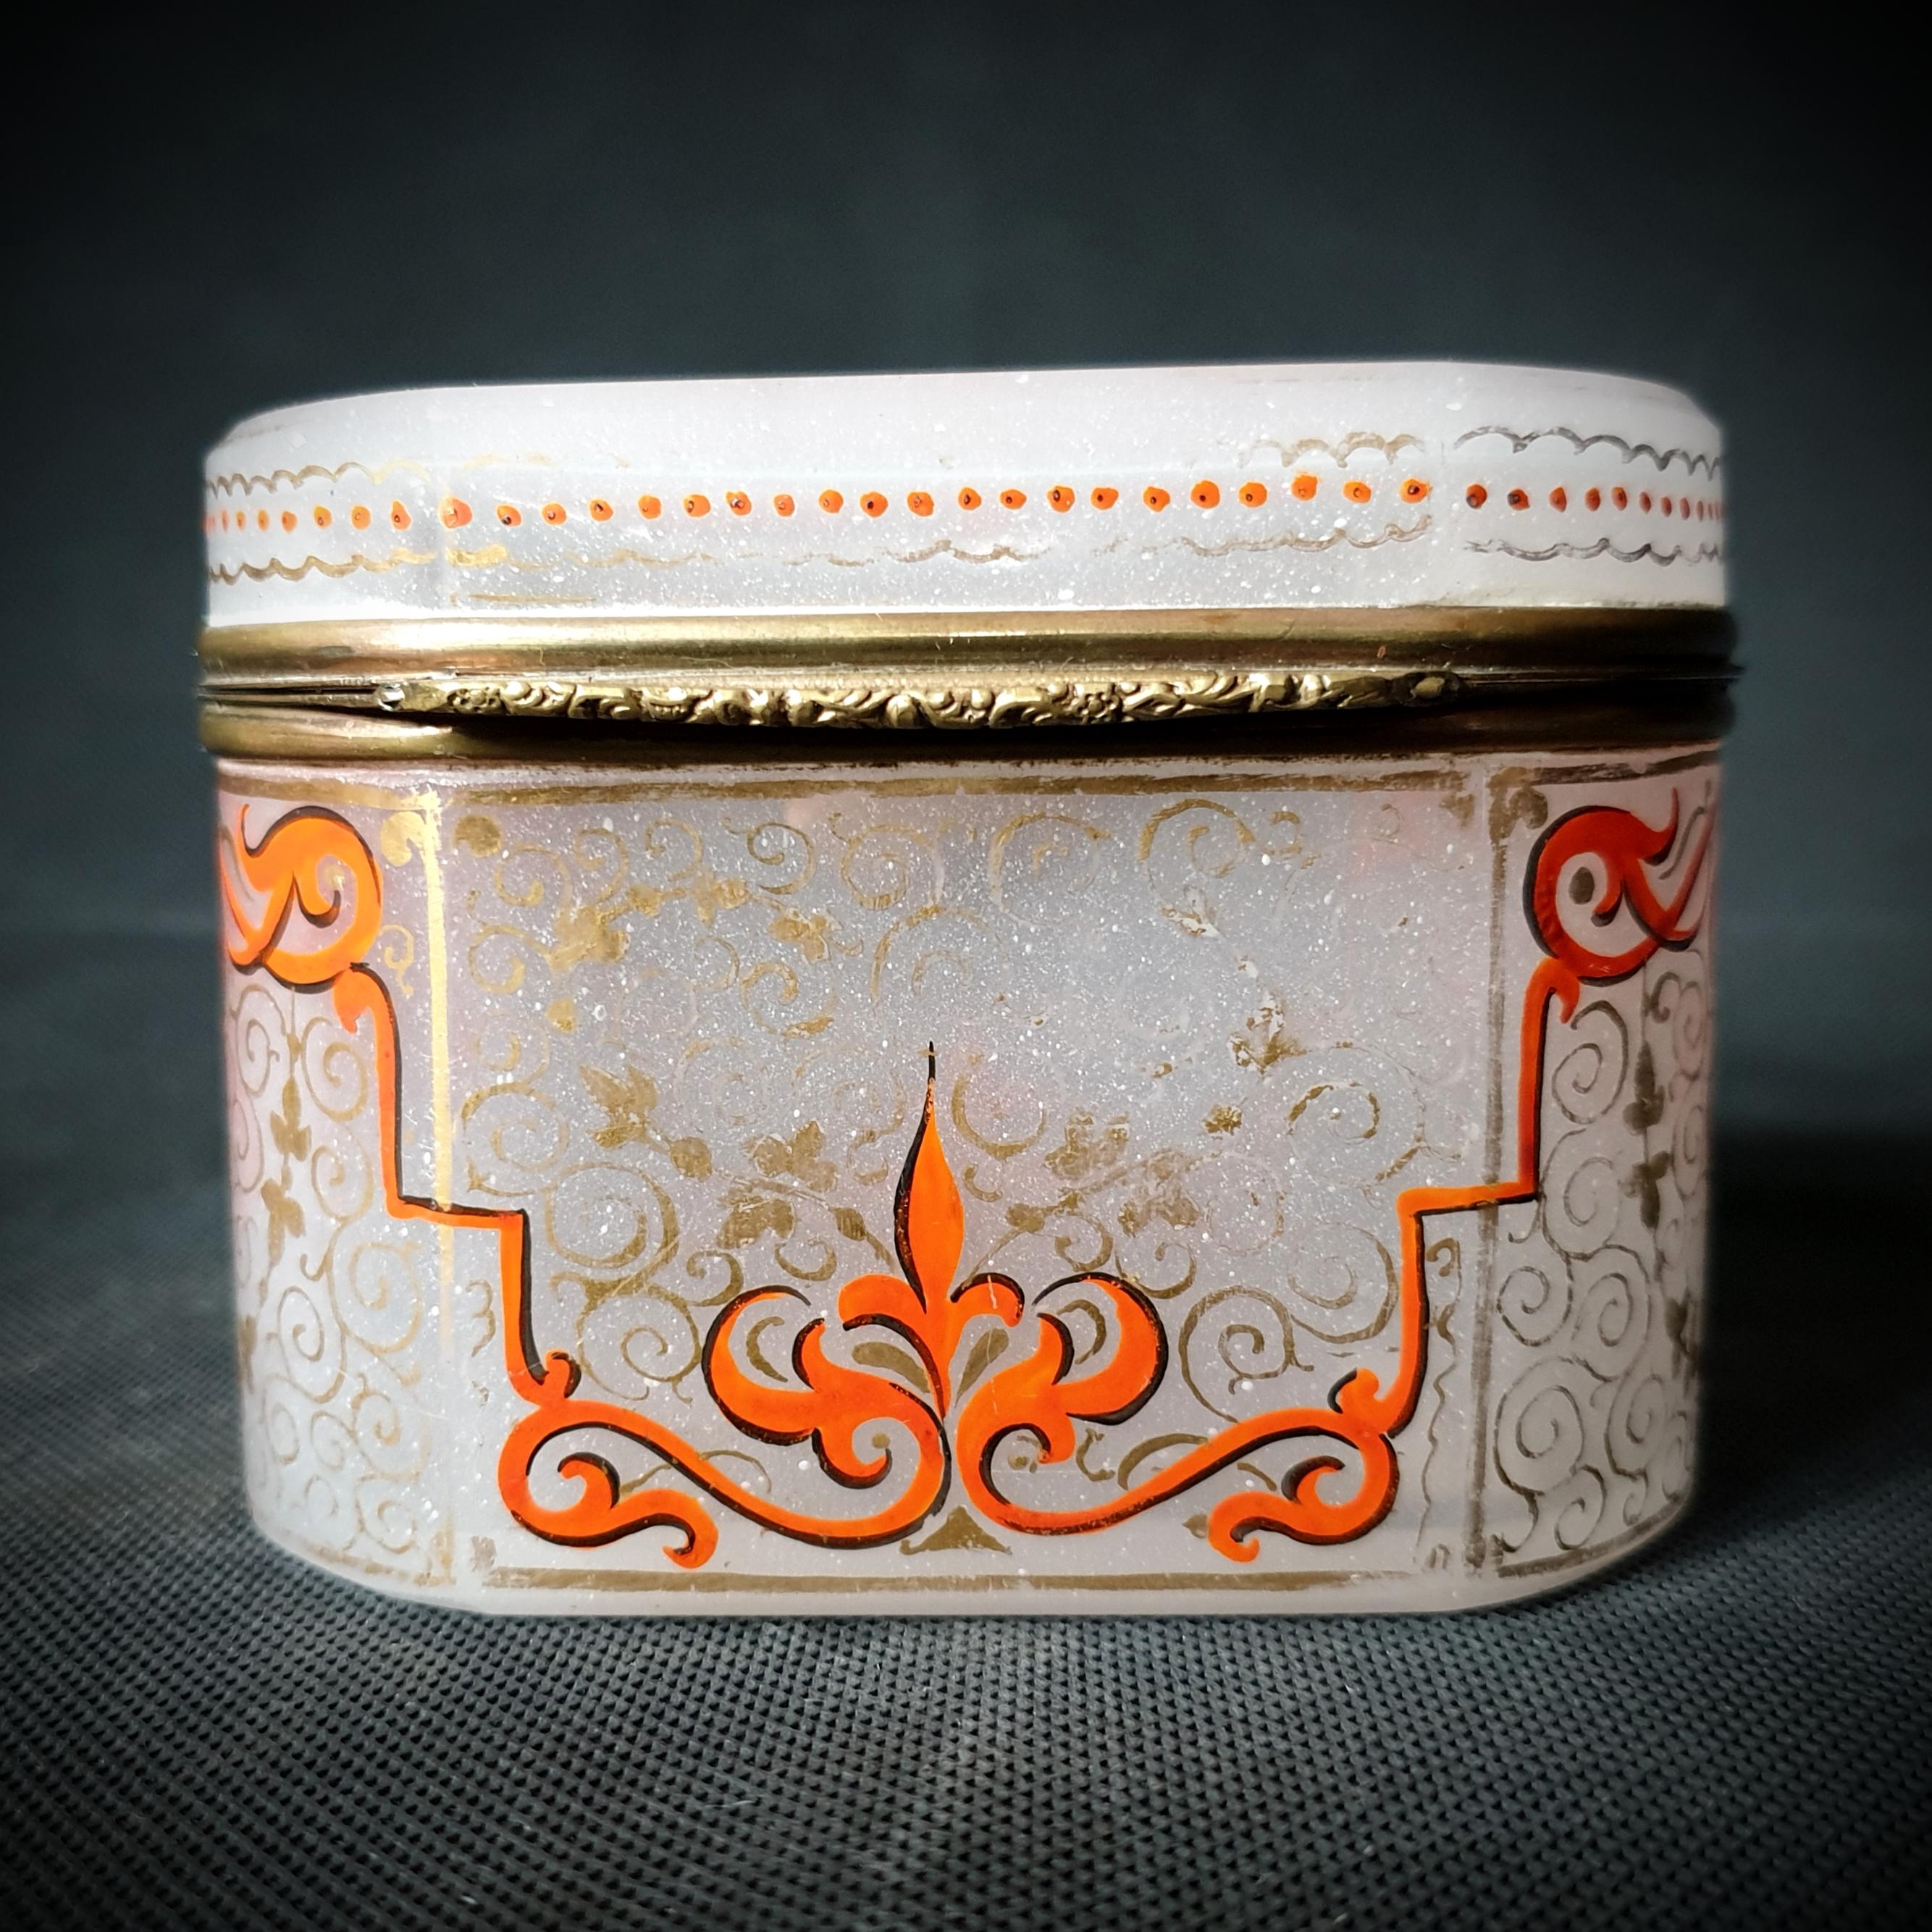 Cette belle boîte en verre opalin et cuivre a été fabriquée par des artisans français qualifiés entre les années 1850 et 1900. Les motifs de fleurs Moser rouge-orange sur le verre blanc laiteux sont magnifiques et sophistiqués, donnant à n'importe